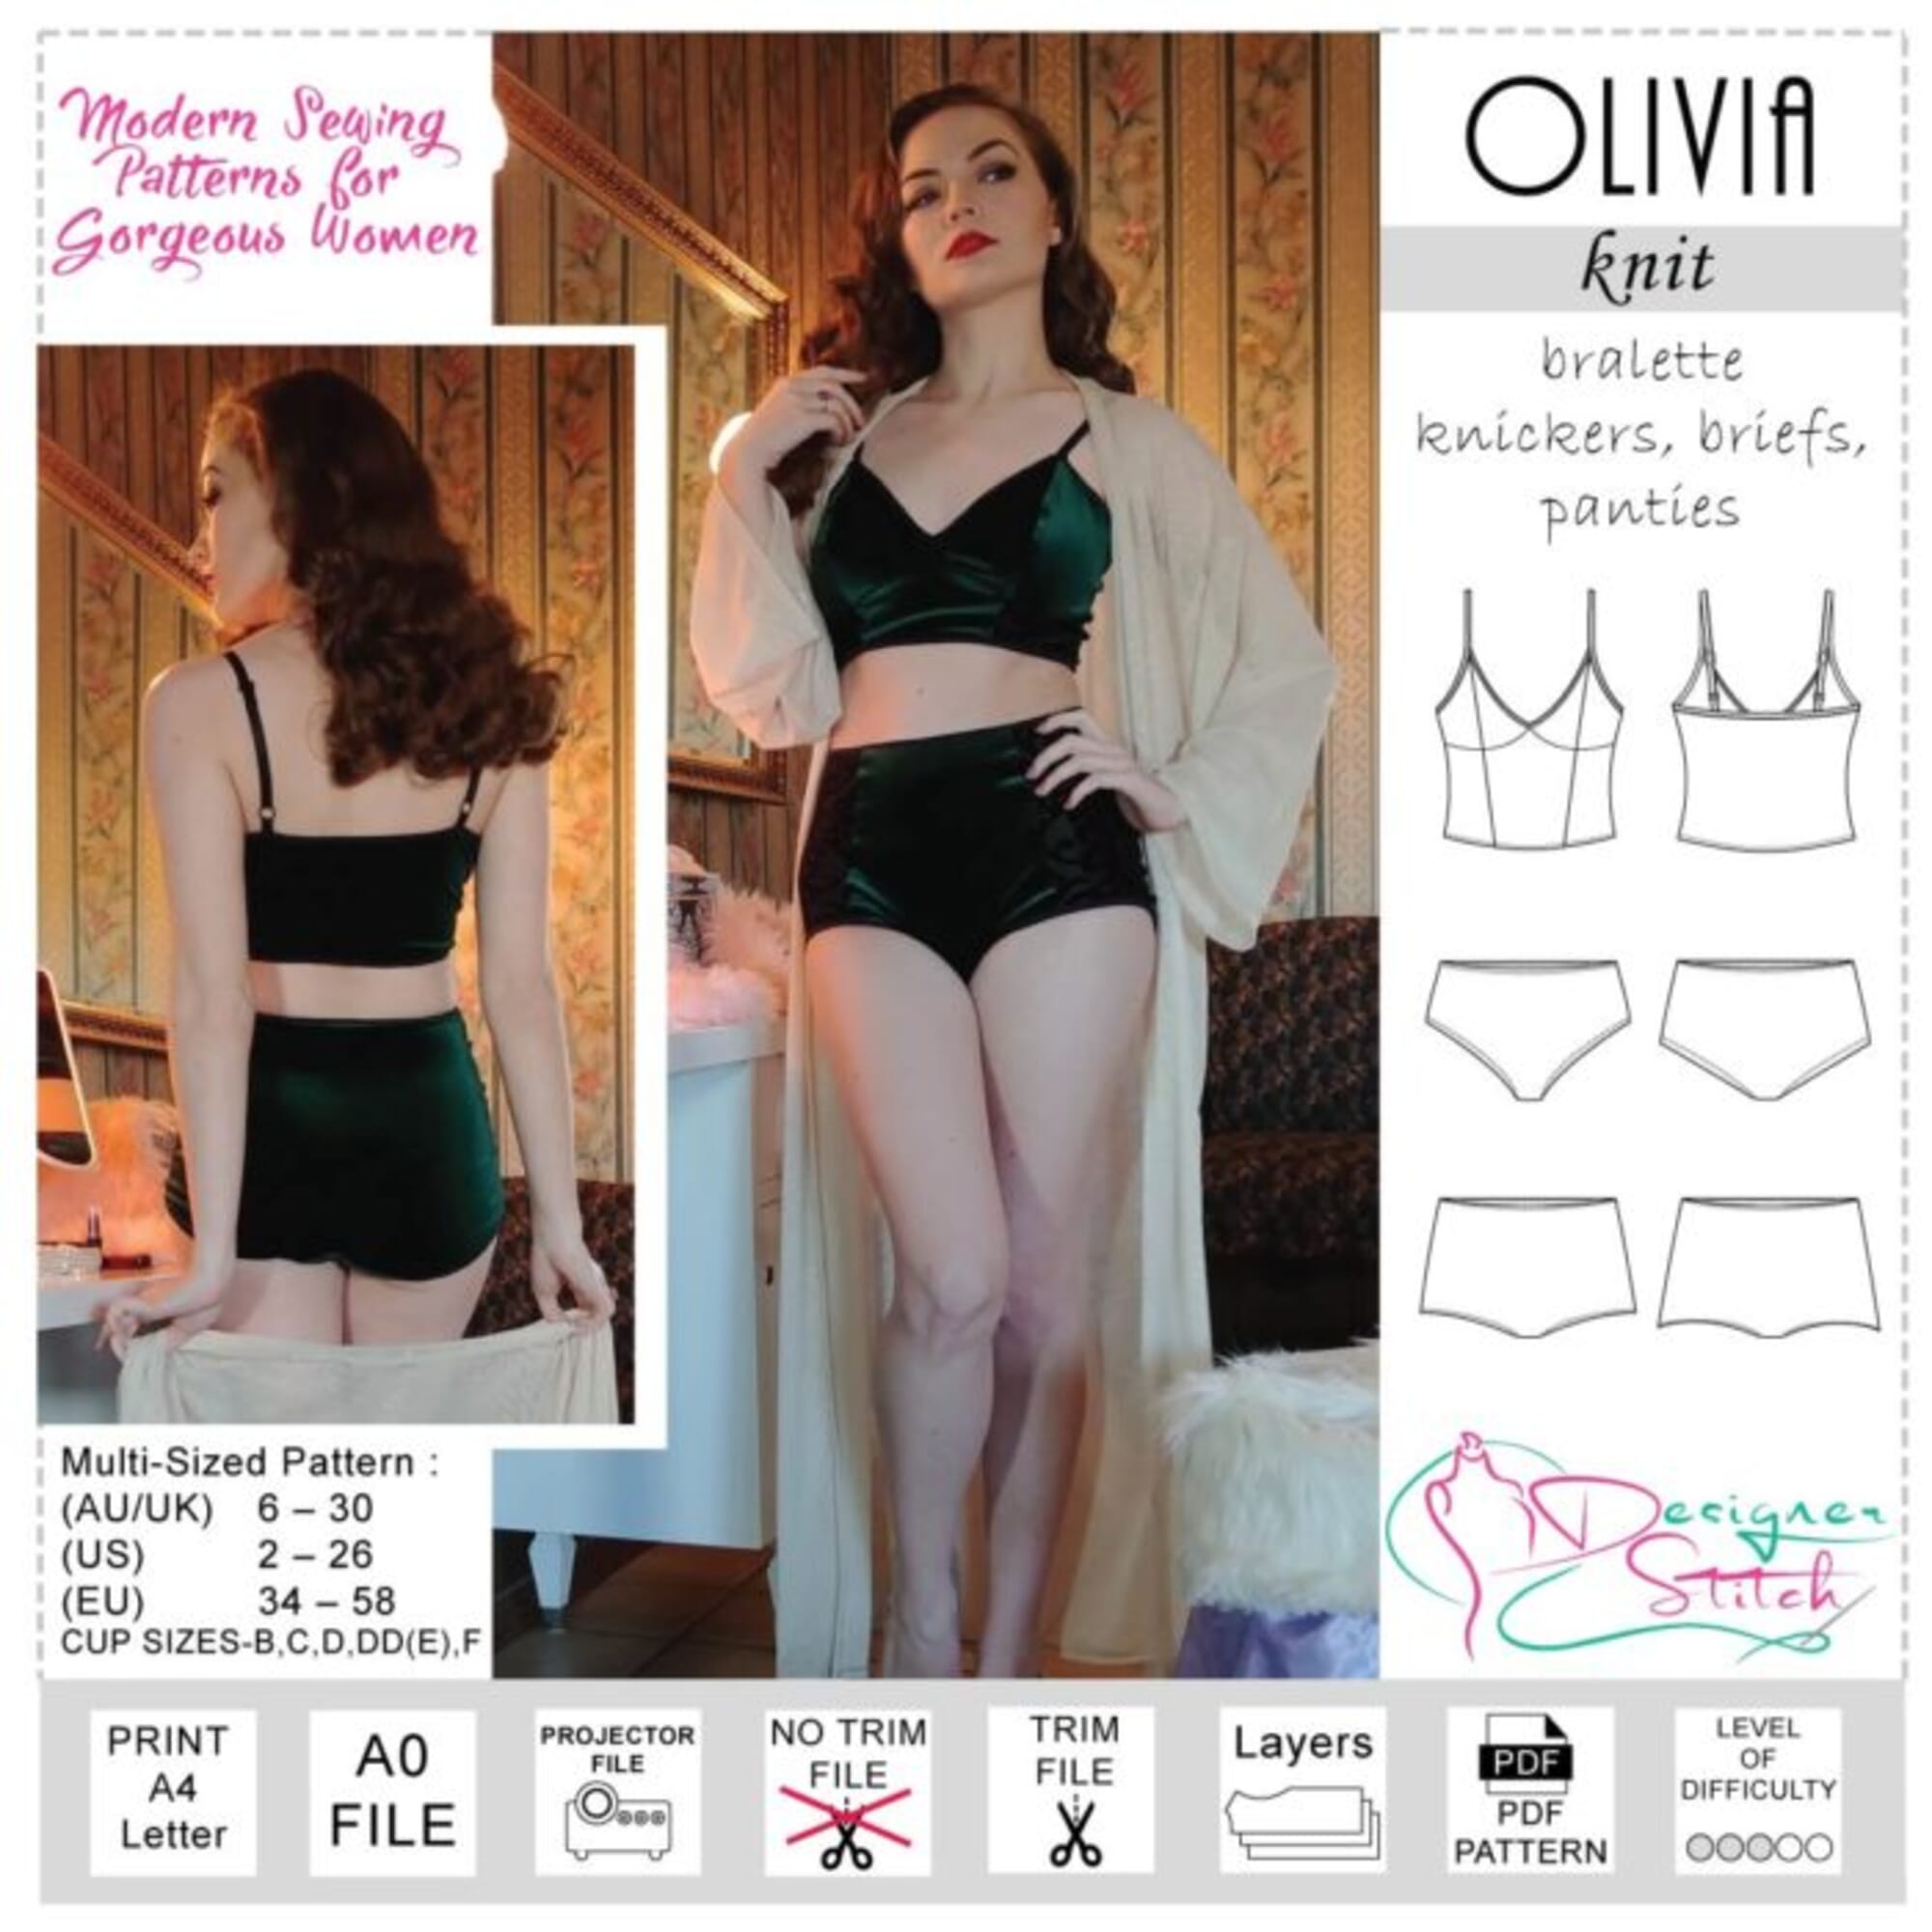 Olivia Bralette Knickers Briefs Panties Sewing Pattern (PDF